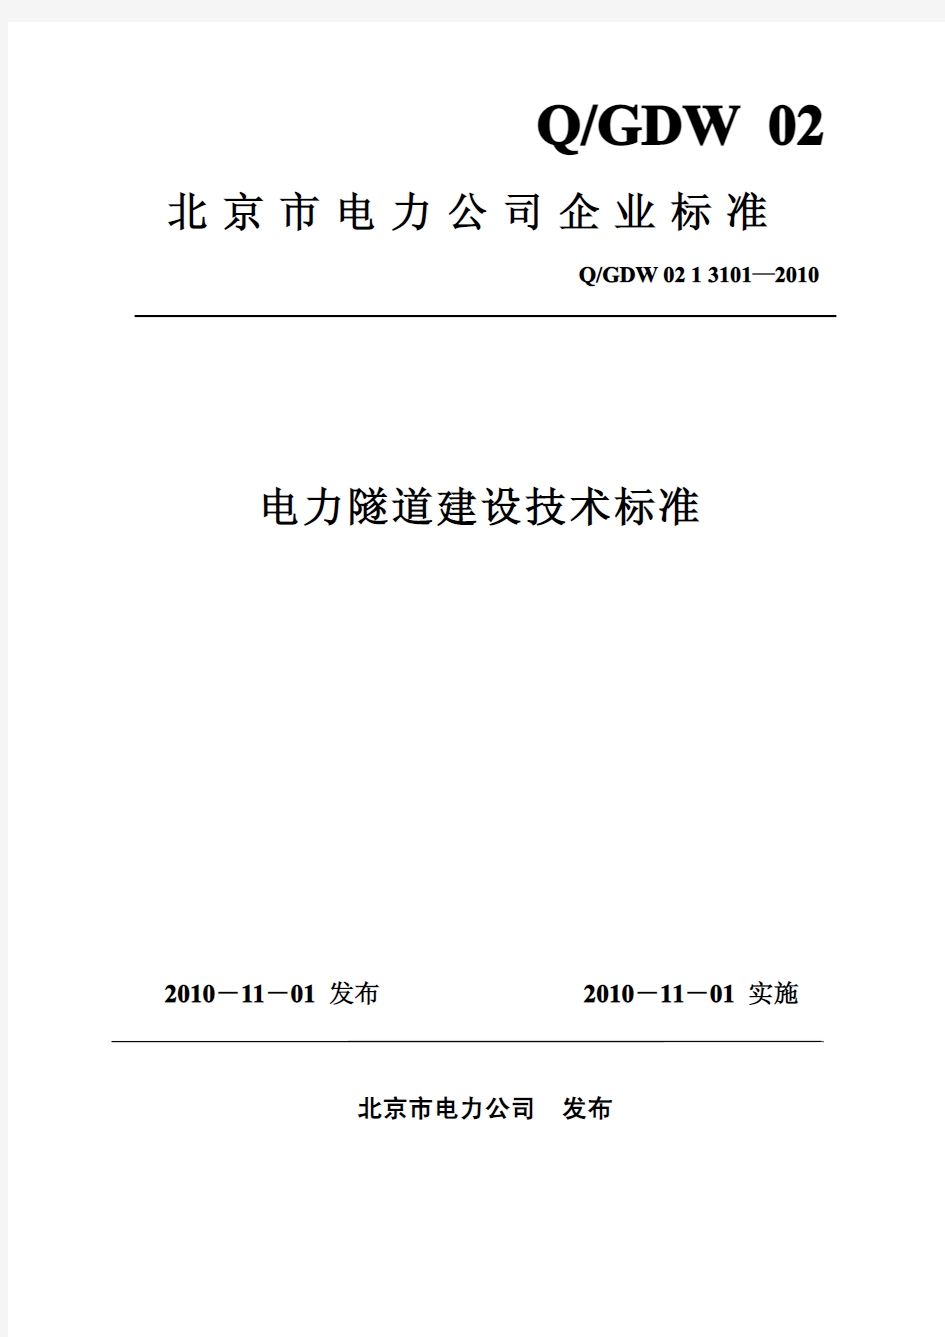 京电发展〔2010〕364号 附件：QGDW 02 1 3101—2010 北京市电力公司电力隧道建设技术标准